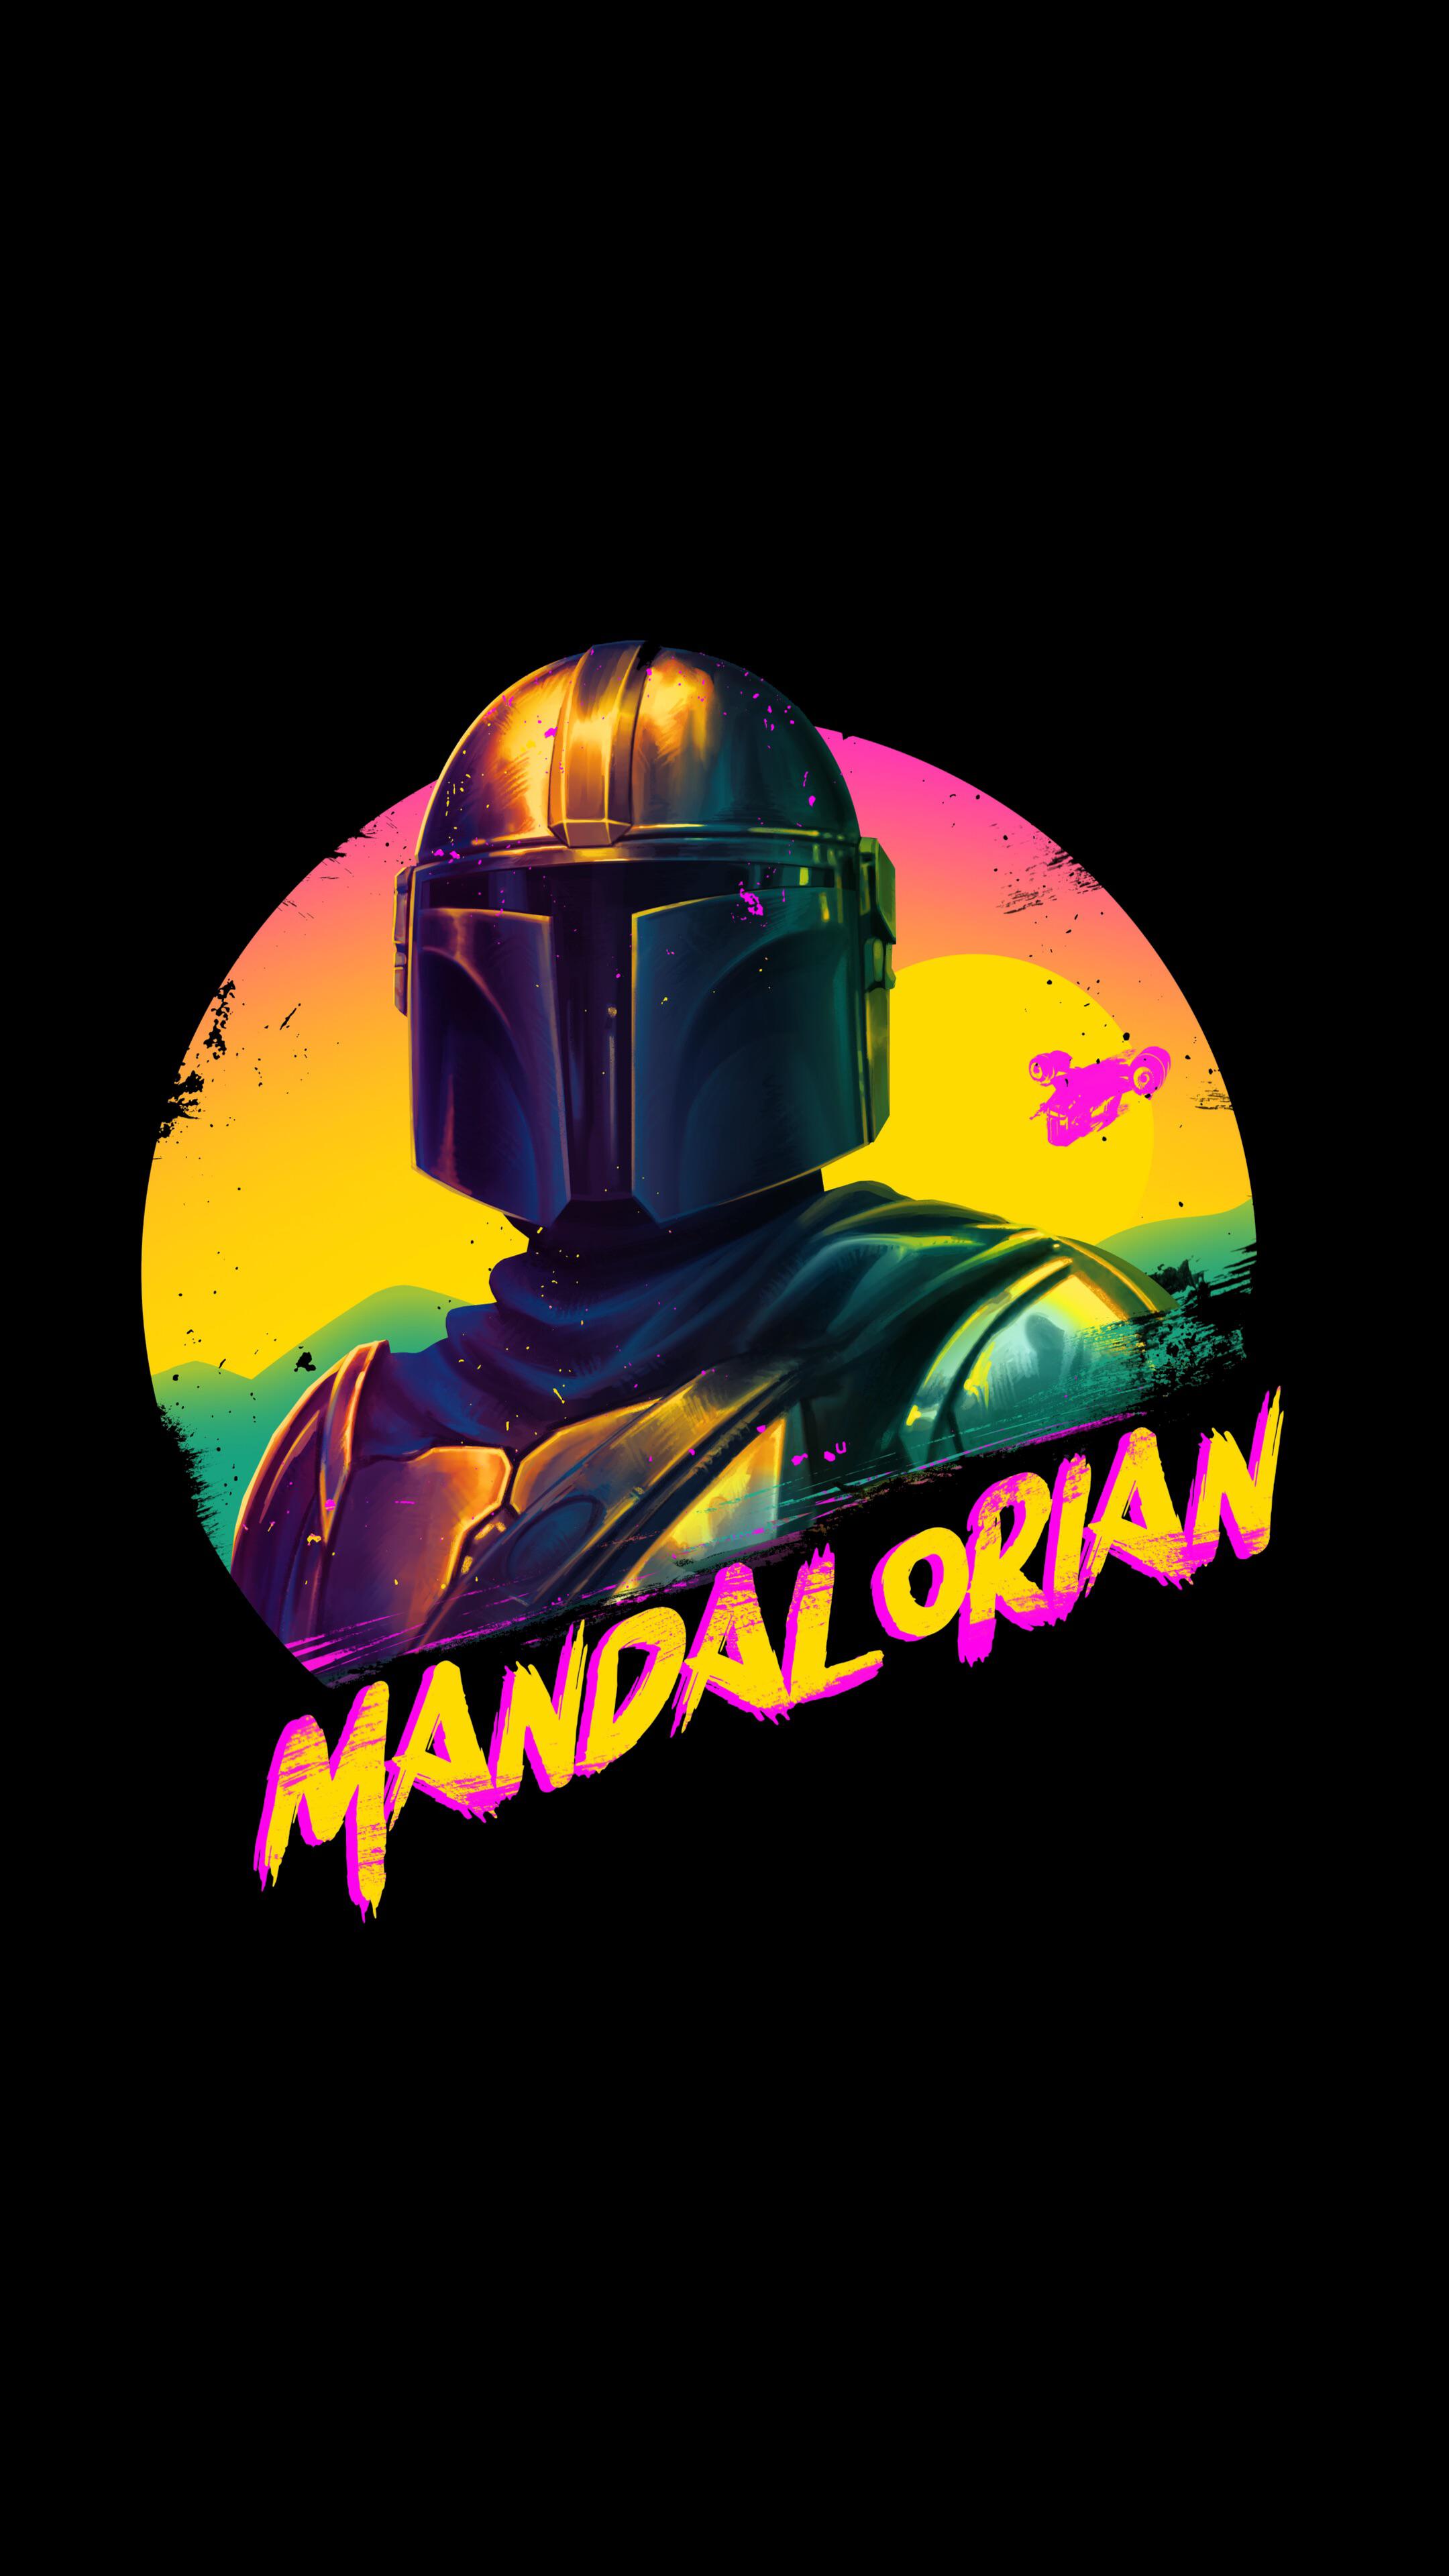 Mandalorian-Wallpaper für dein iPhone herunterladen | Mac Life